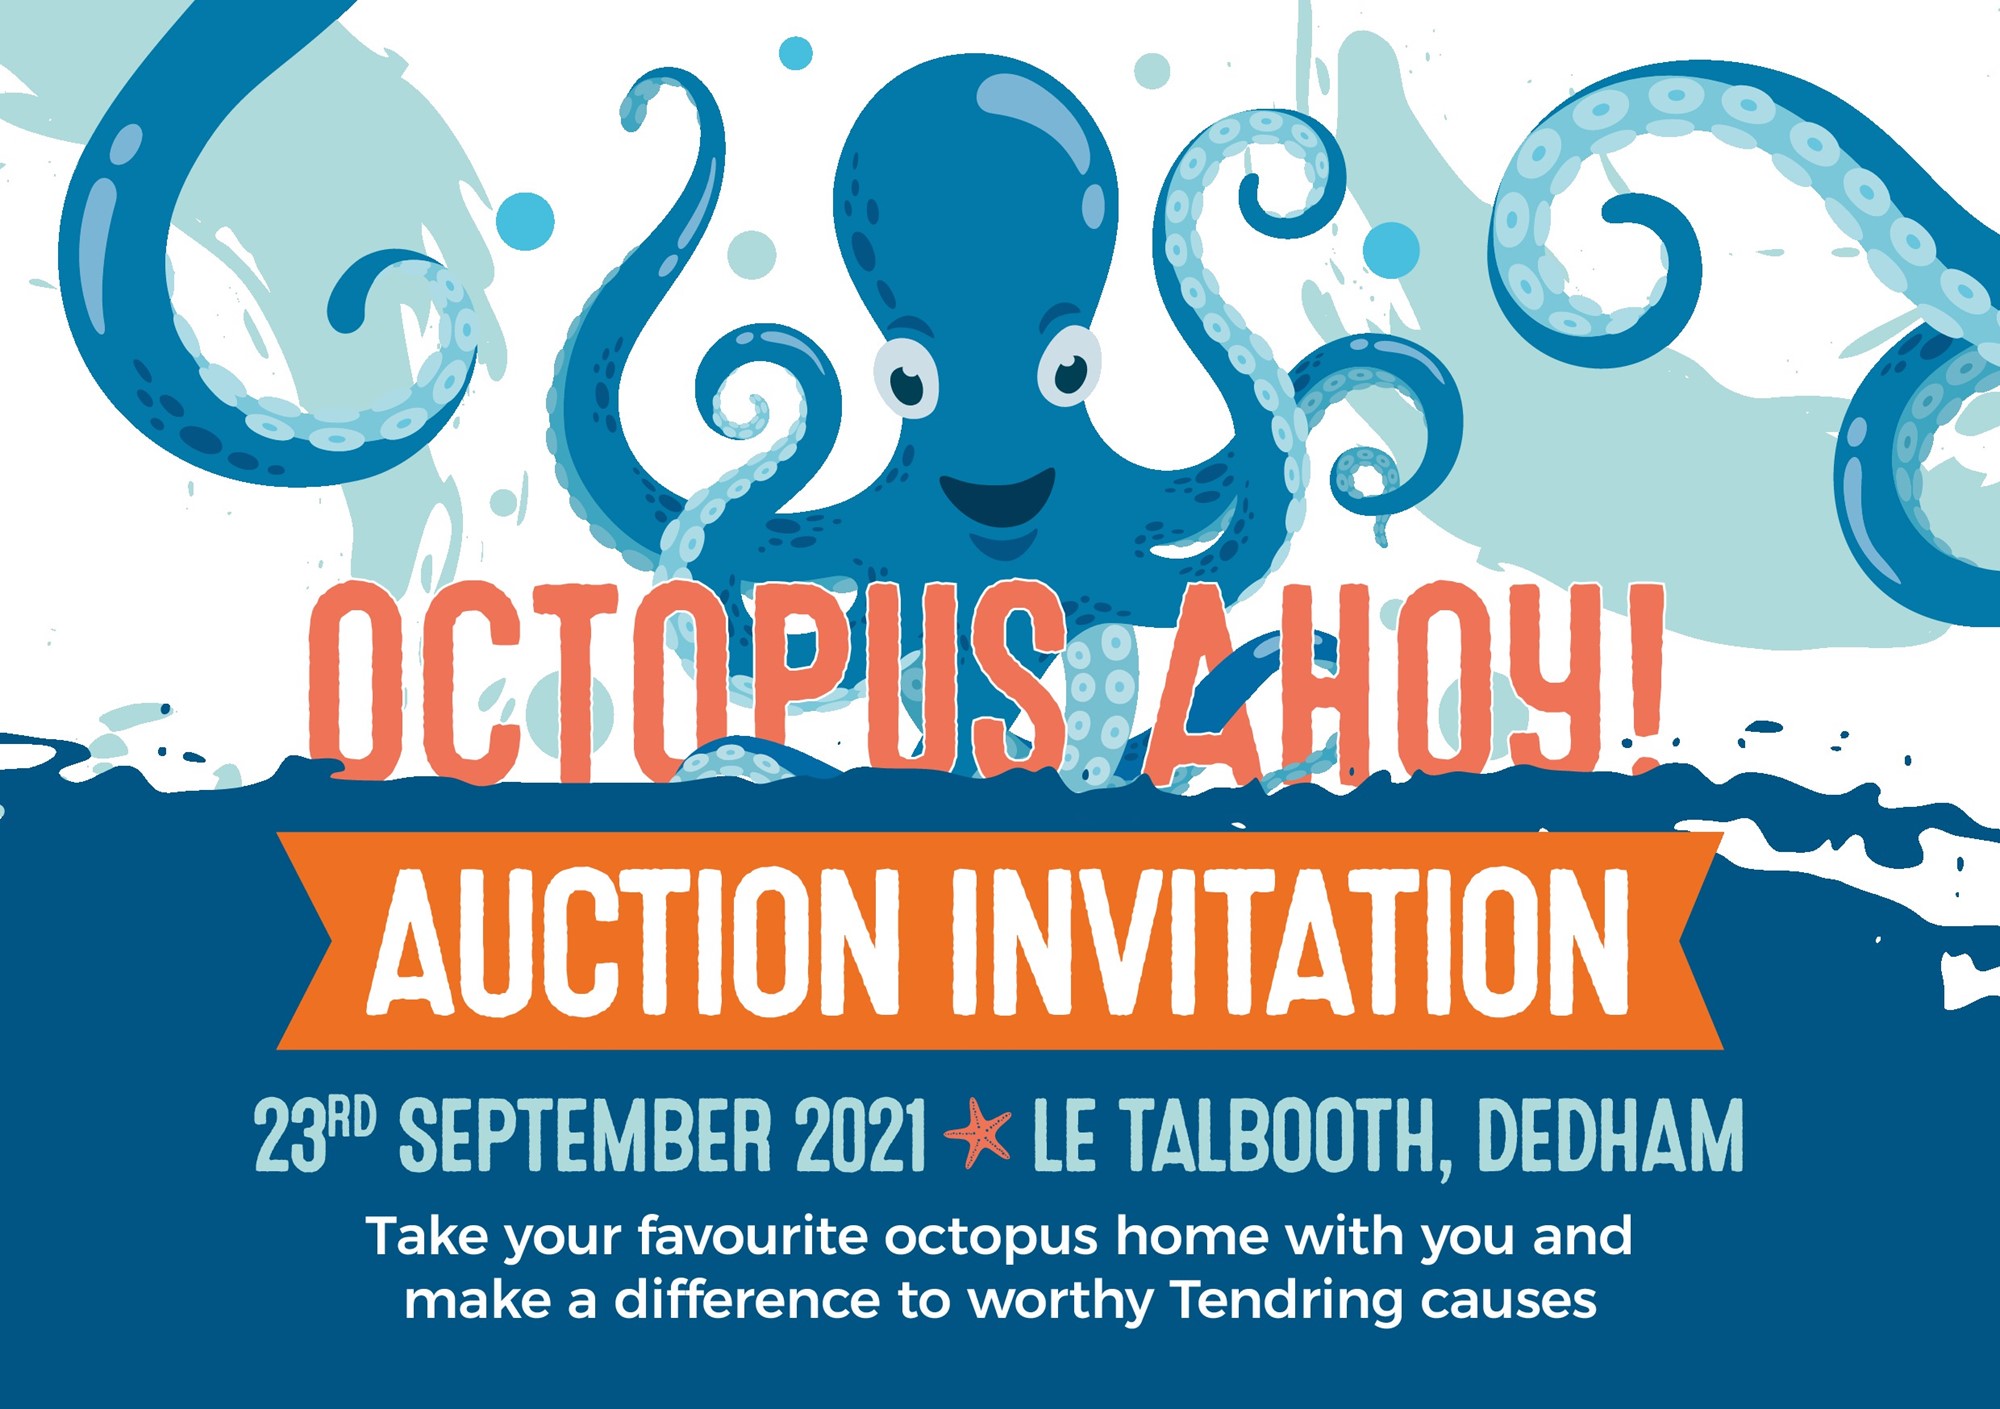 Octopus Ahoy ! Auction 